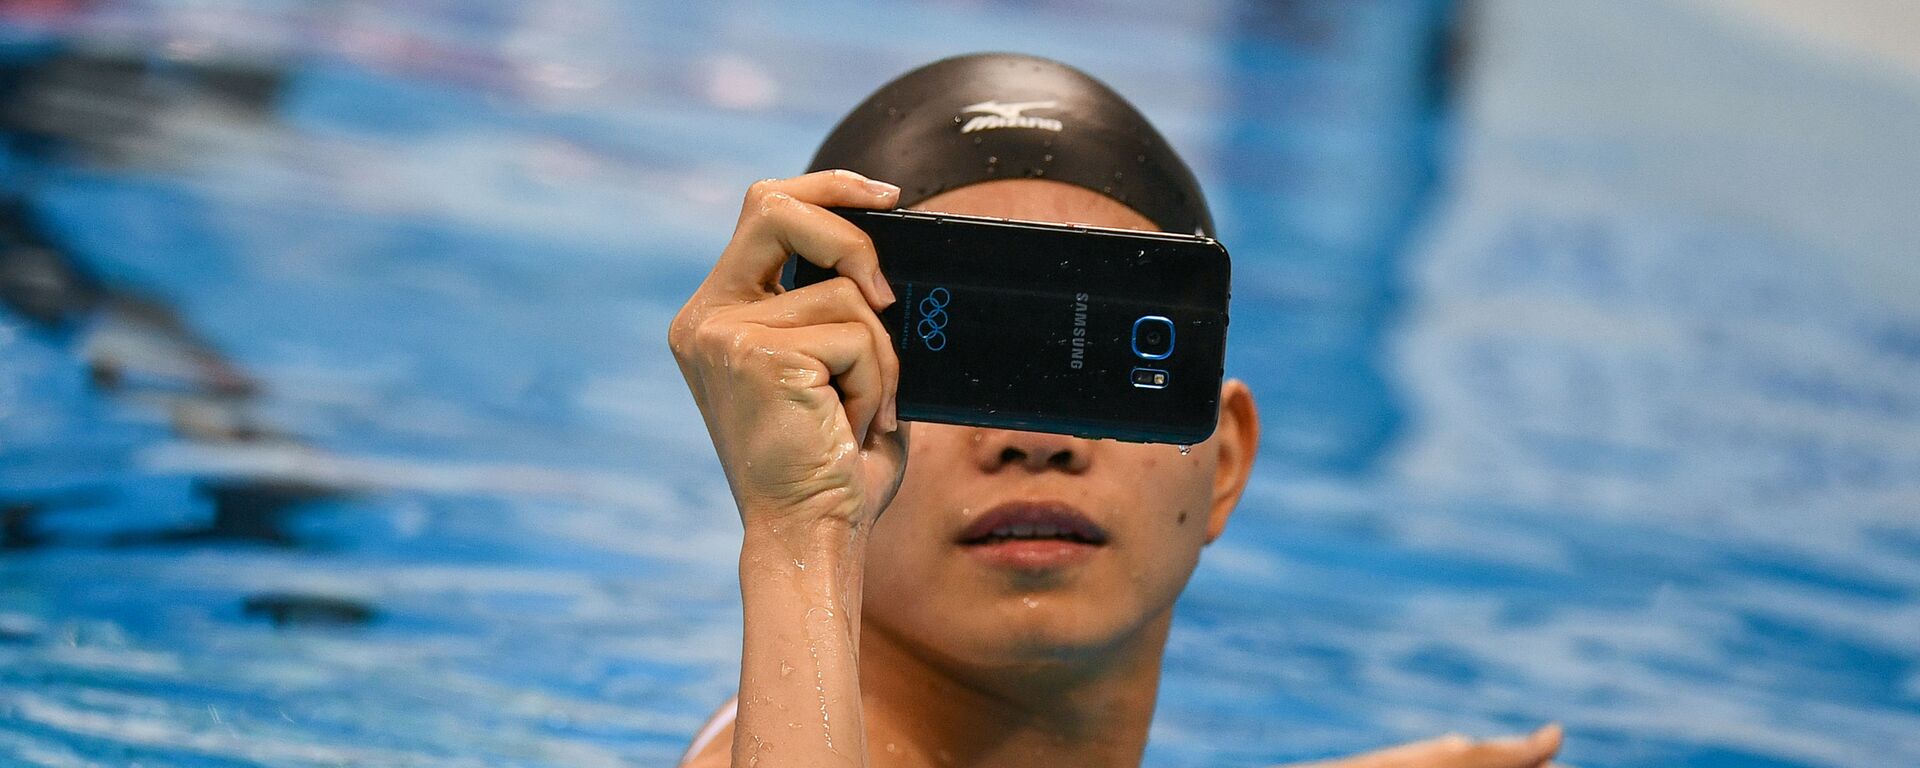 Pei Wong Lin (Đài Bắc Trung Hoa) khởi động trước khi bắt đầu trận chung kết bơi lội tại Thế vận hội mùa hè XXXI - Sputnik Việt Nam, 1920, 15.01.2022